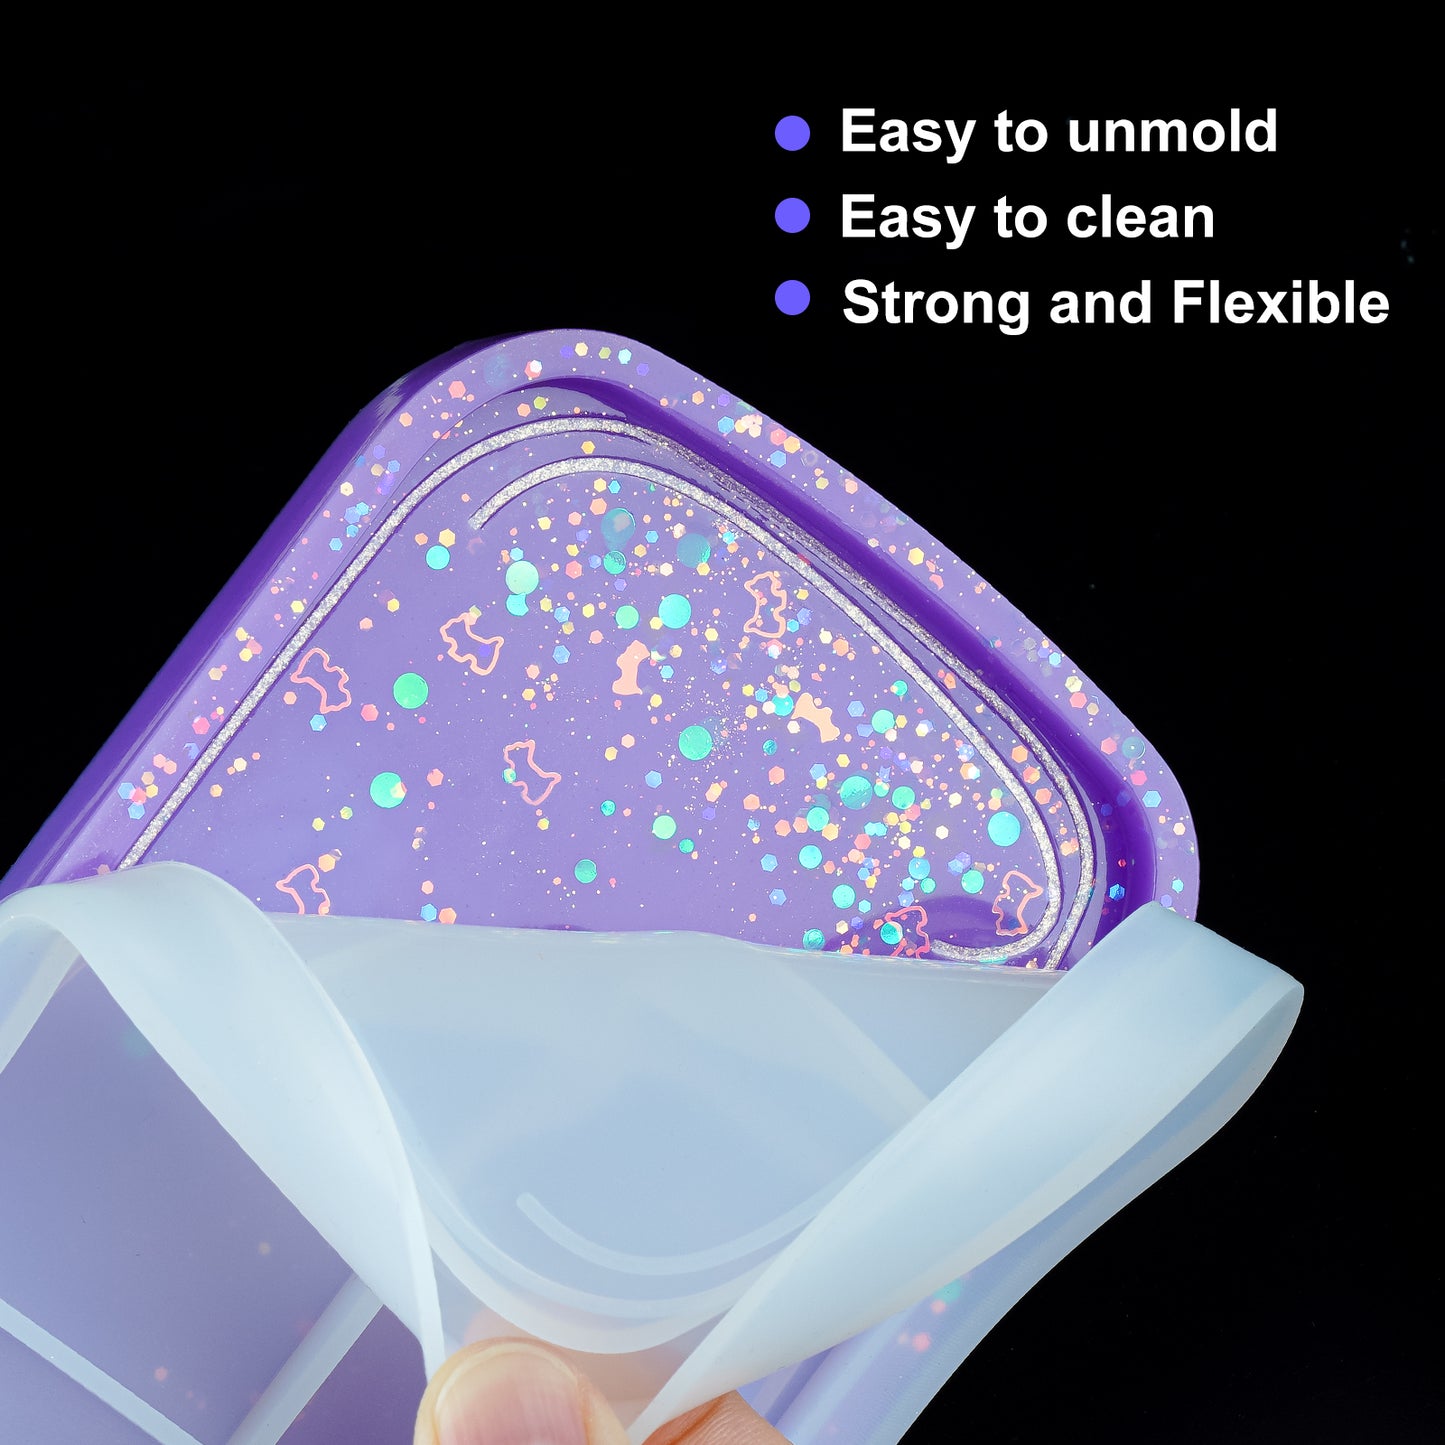 Bottle Shape 6.2?” Rolling Tray Coaster Epoxy Resin Casting Silicone Mold Kit